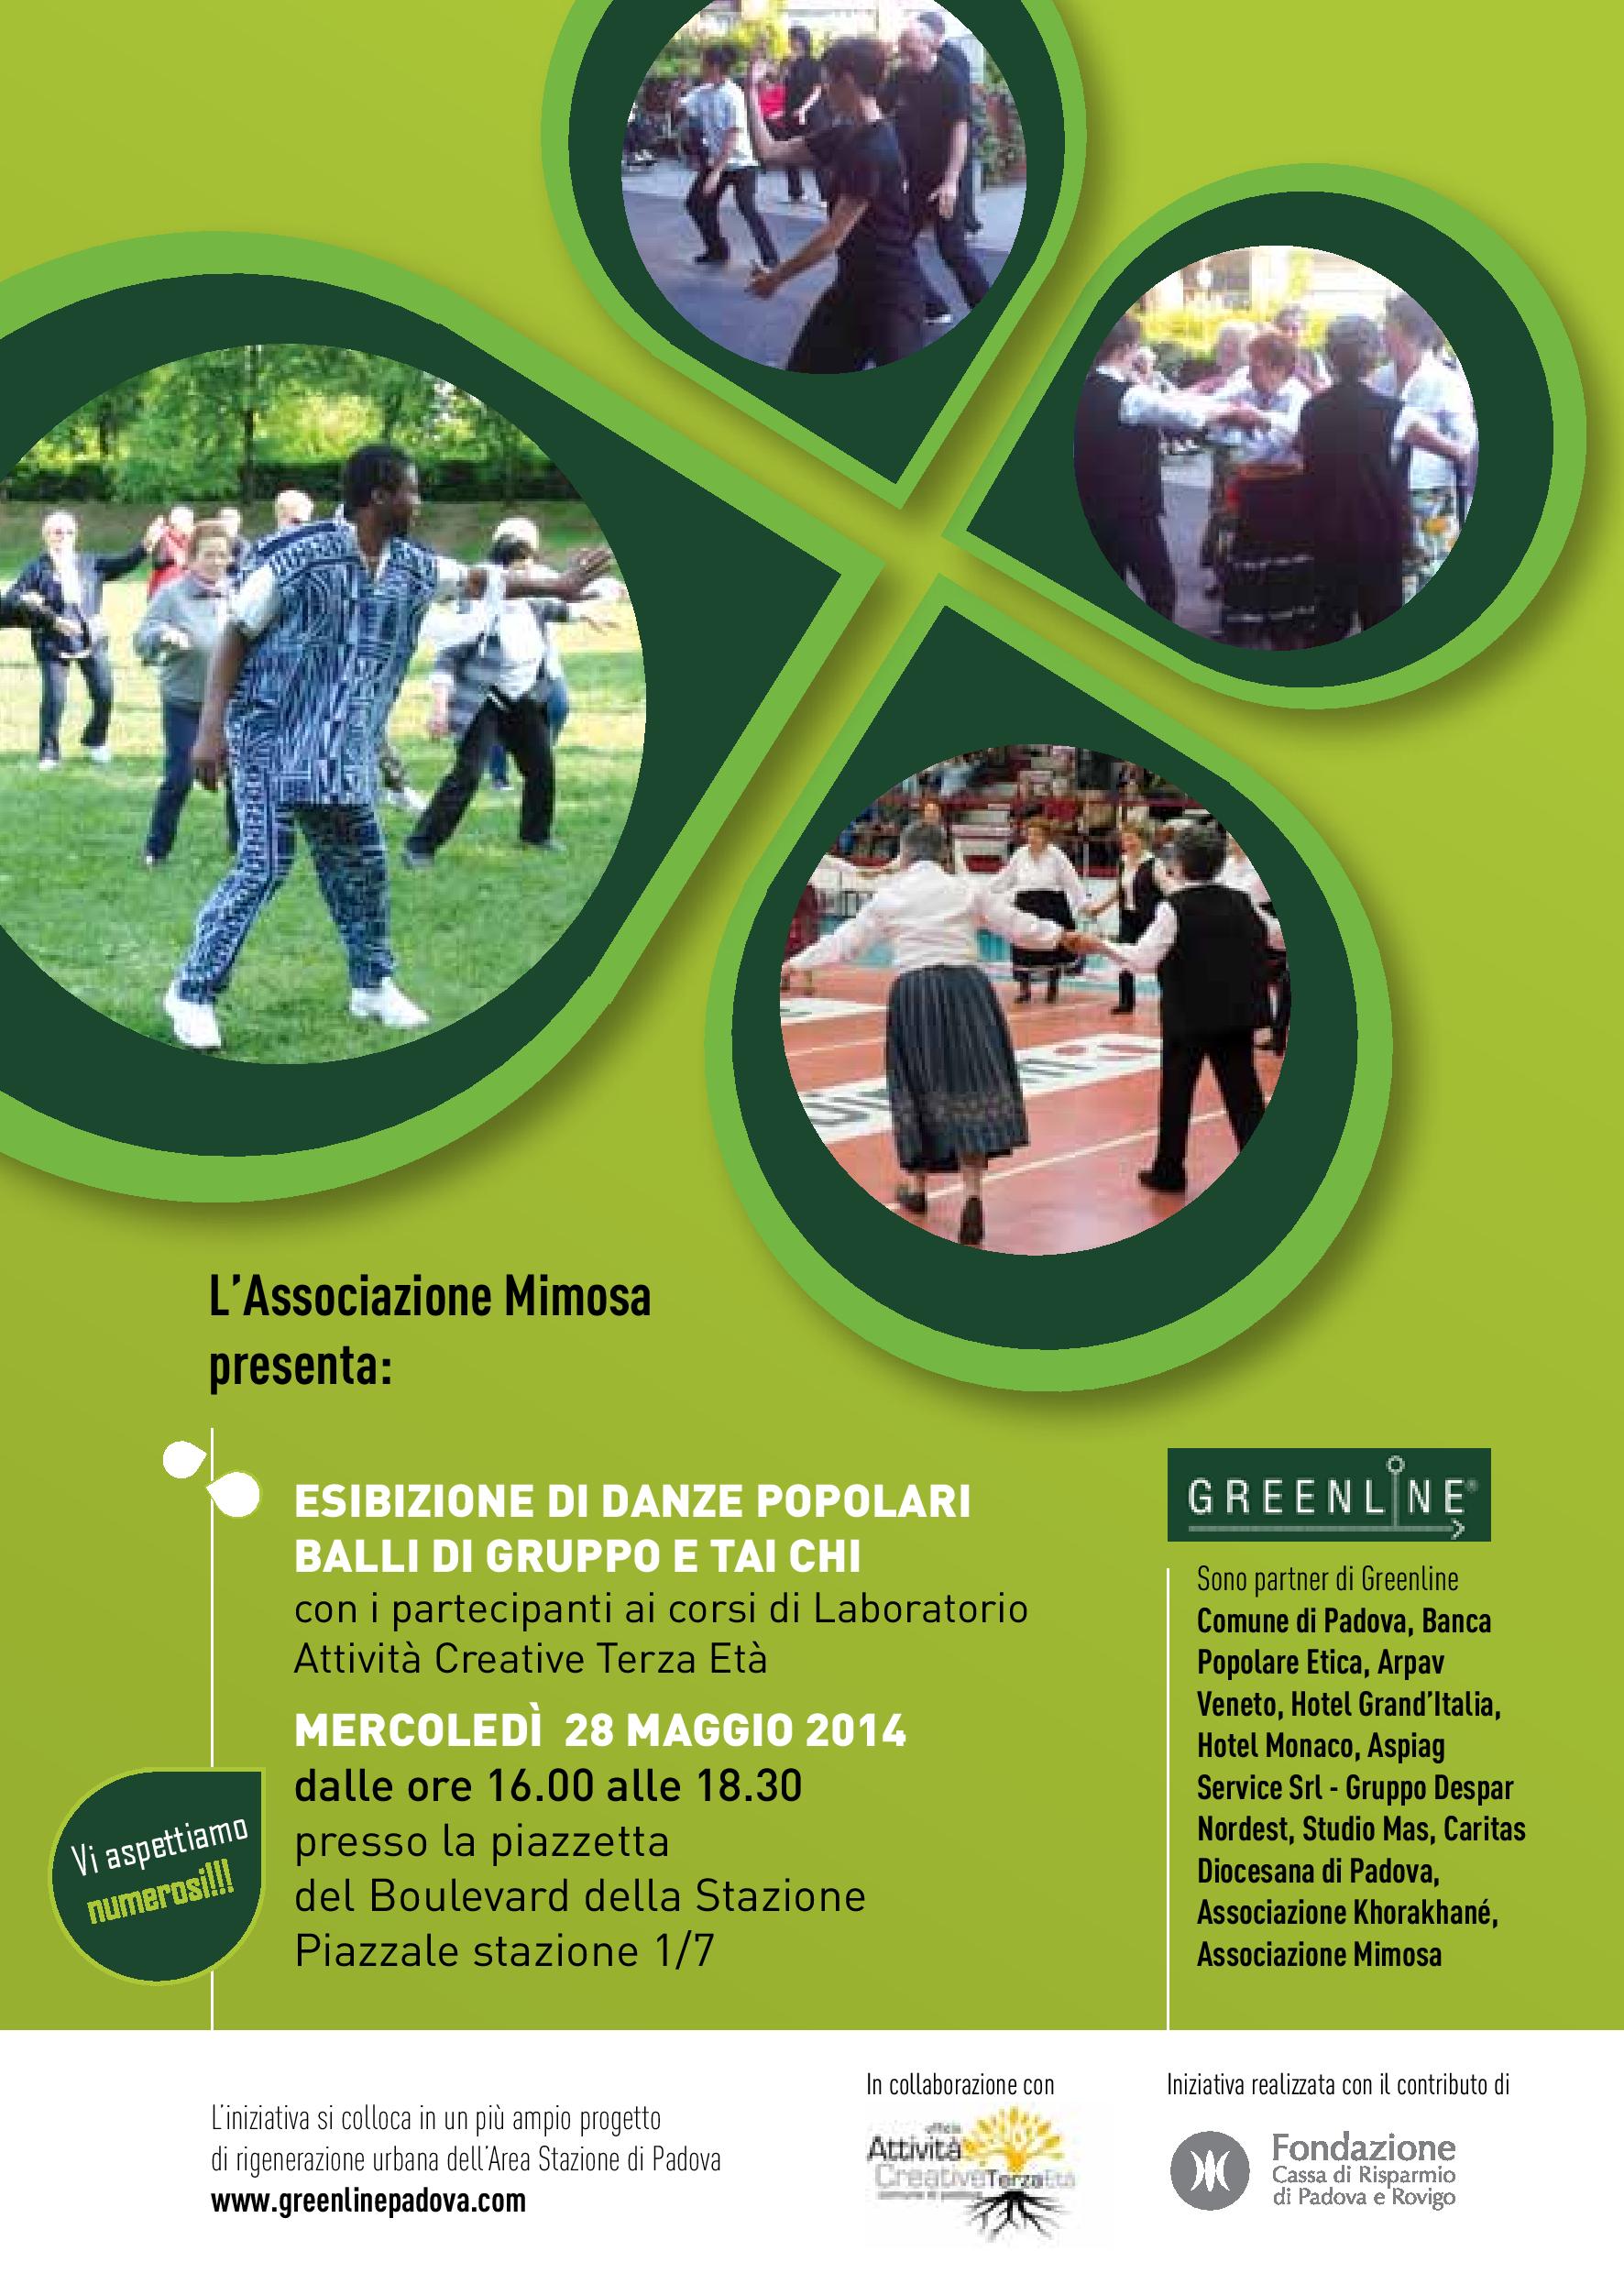 Greenline Esibizione Di Danze Popolari Balli Di Gruppo E Tai Chi 28 05 14 Associazione Mimosa